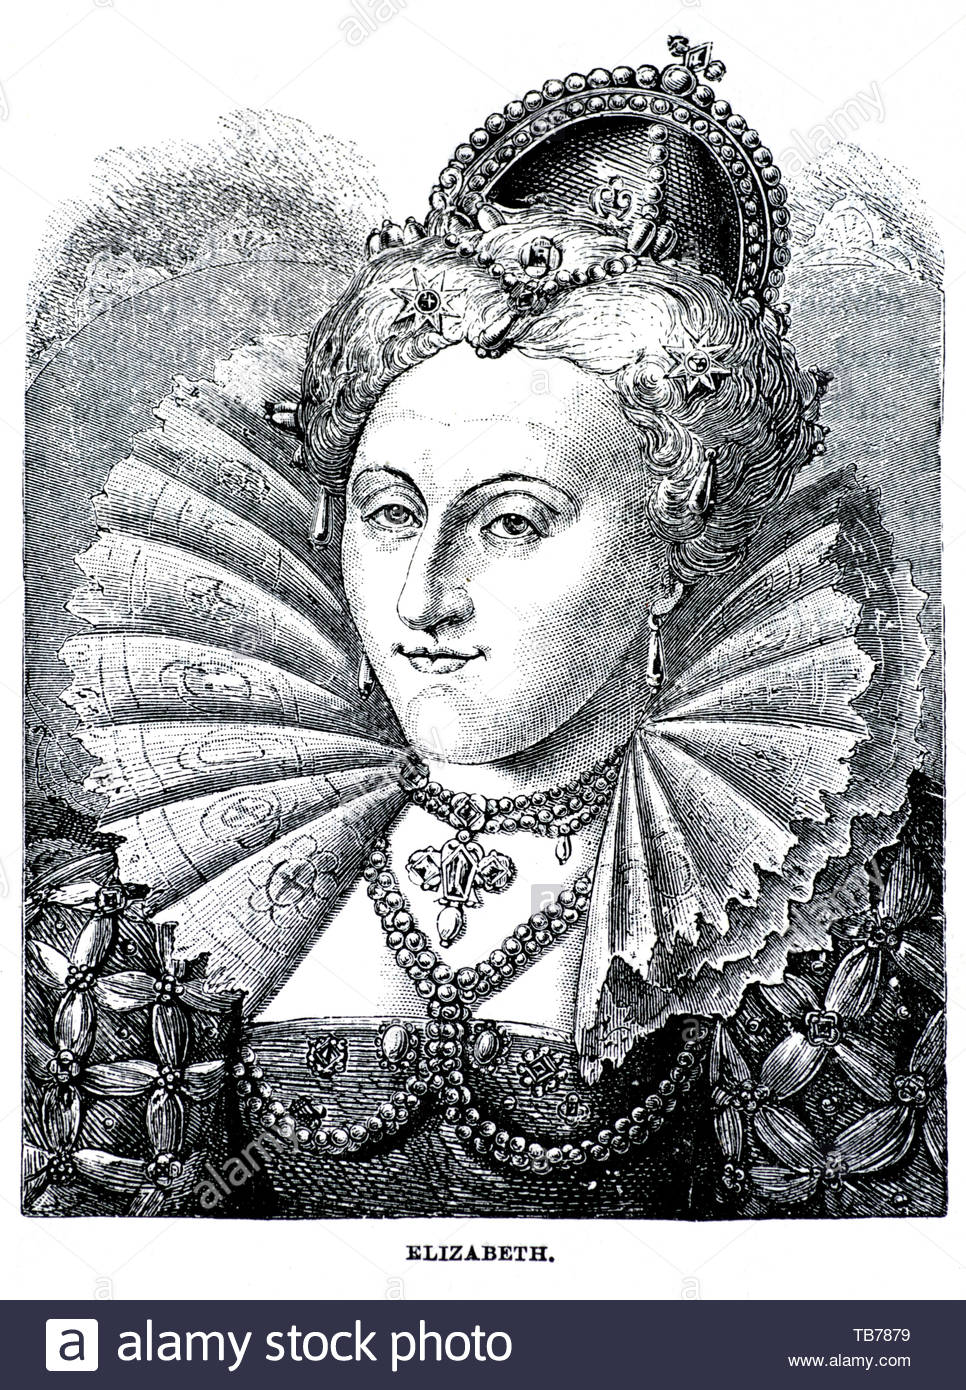 Elizabeth I portrait, 1533 - 1603, a été reine d'Angleterre et d'Irlande de 1558 jusqu'à sa mort le 24 mars 1603 Banque D'Images